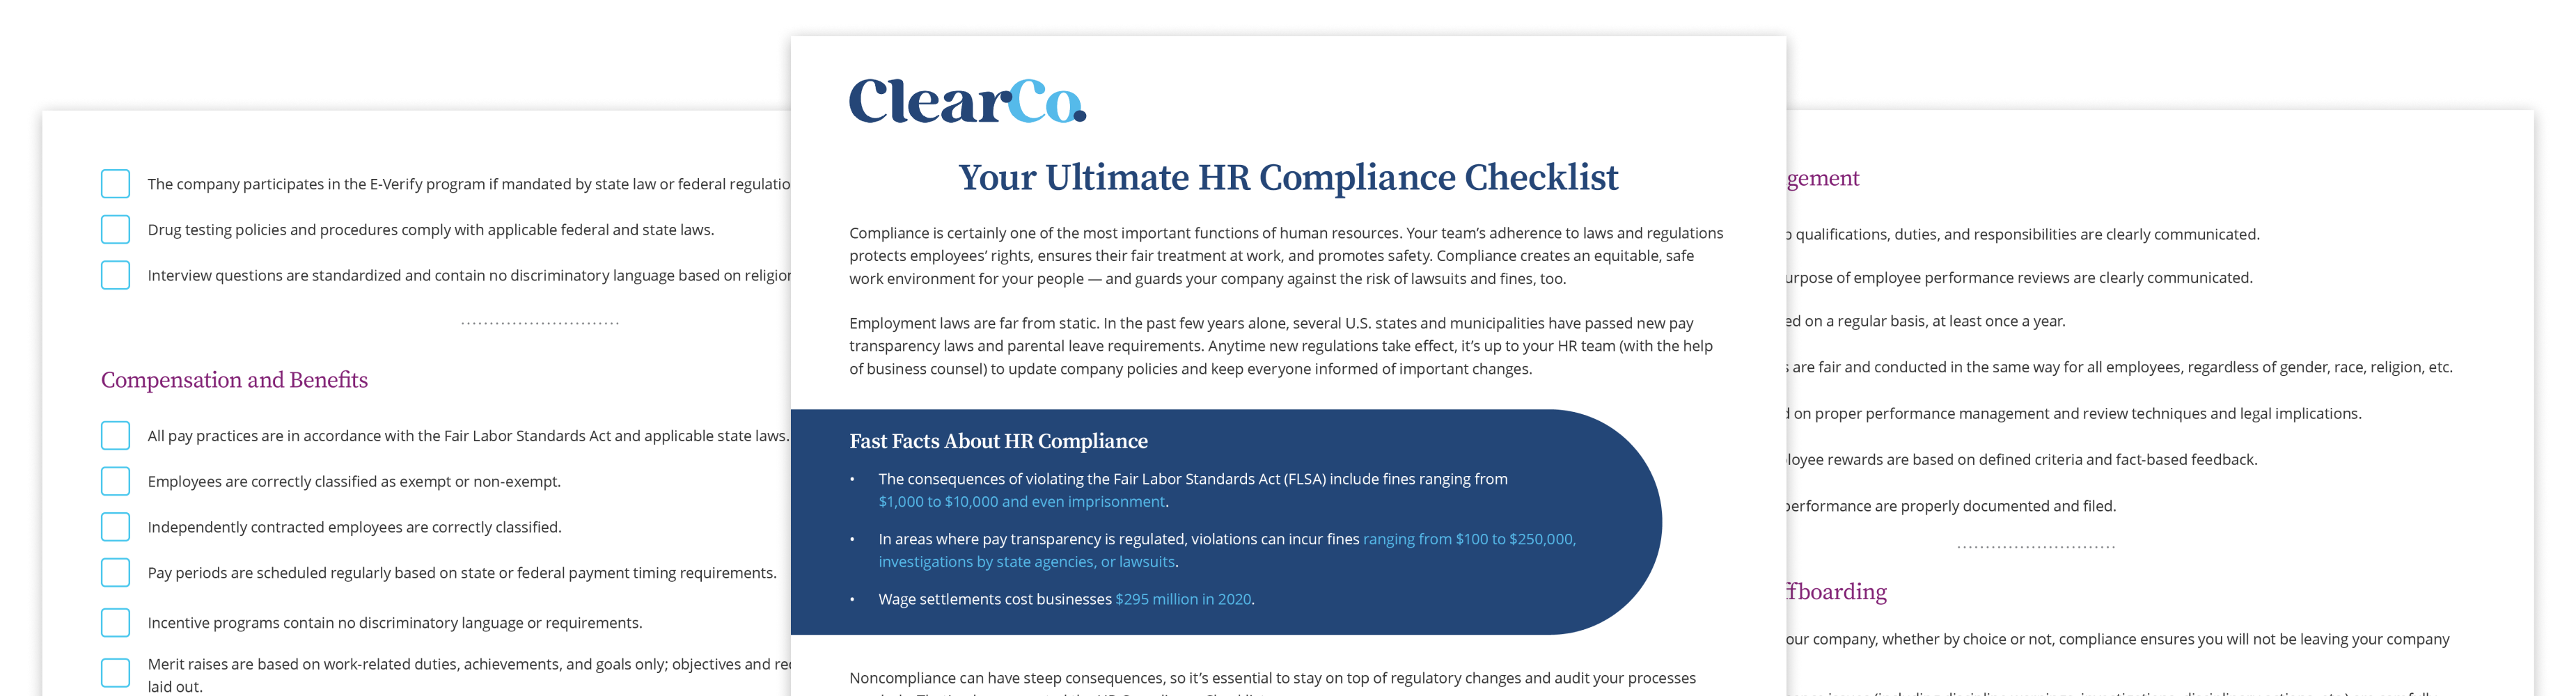 HR-Compliance-Checklist-LP mockup